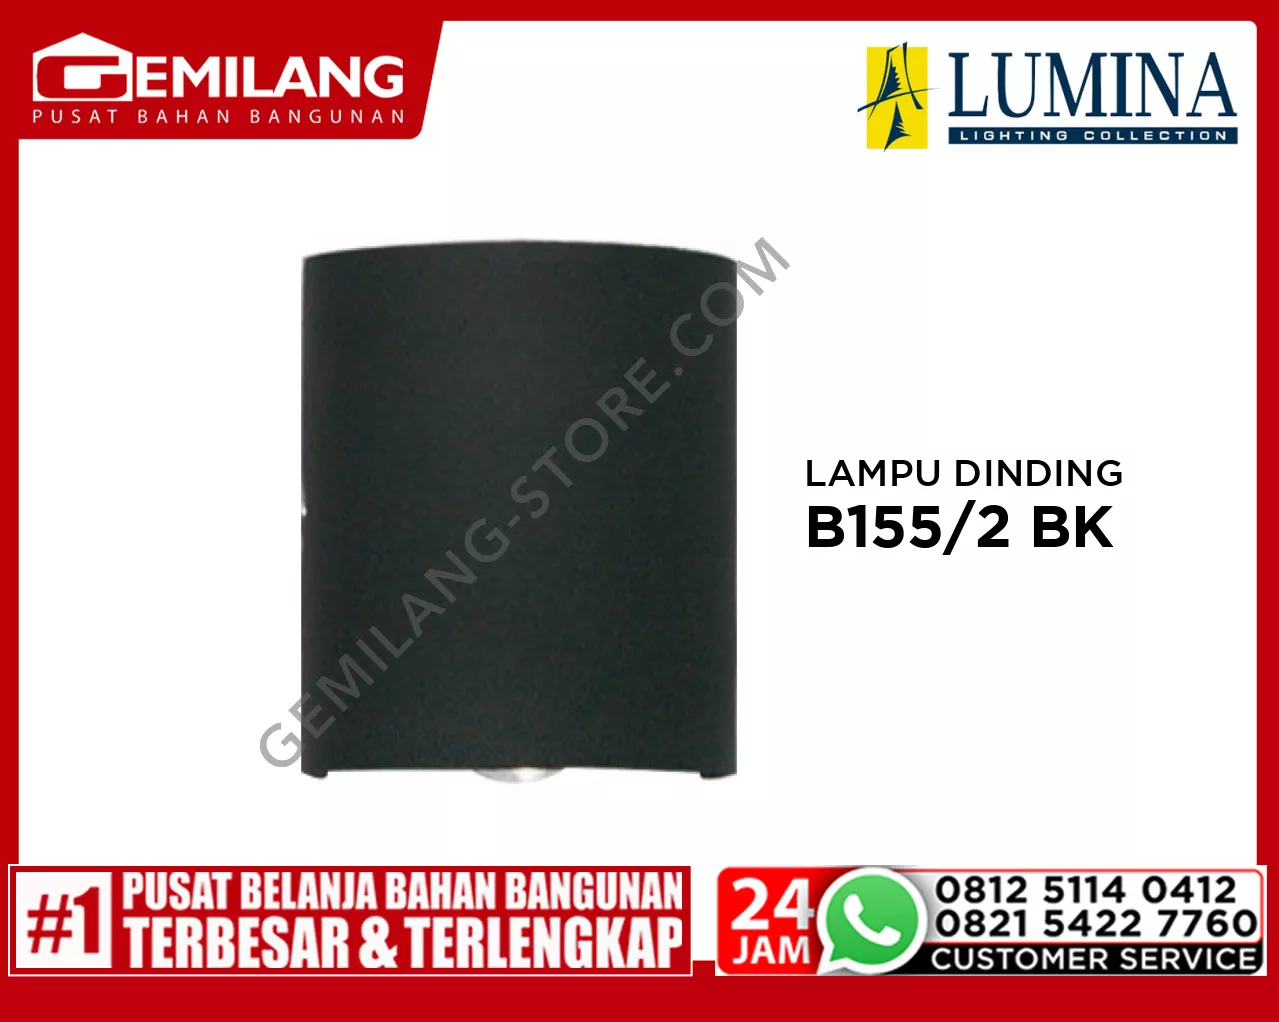 LAMPU DINDING B155/2 BK-6400K